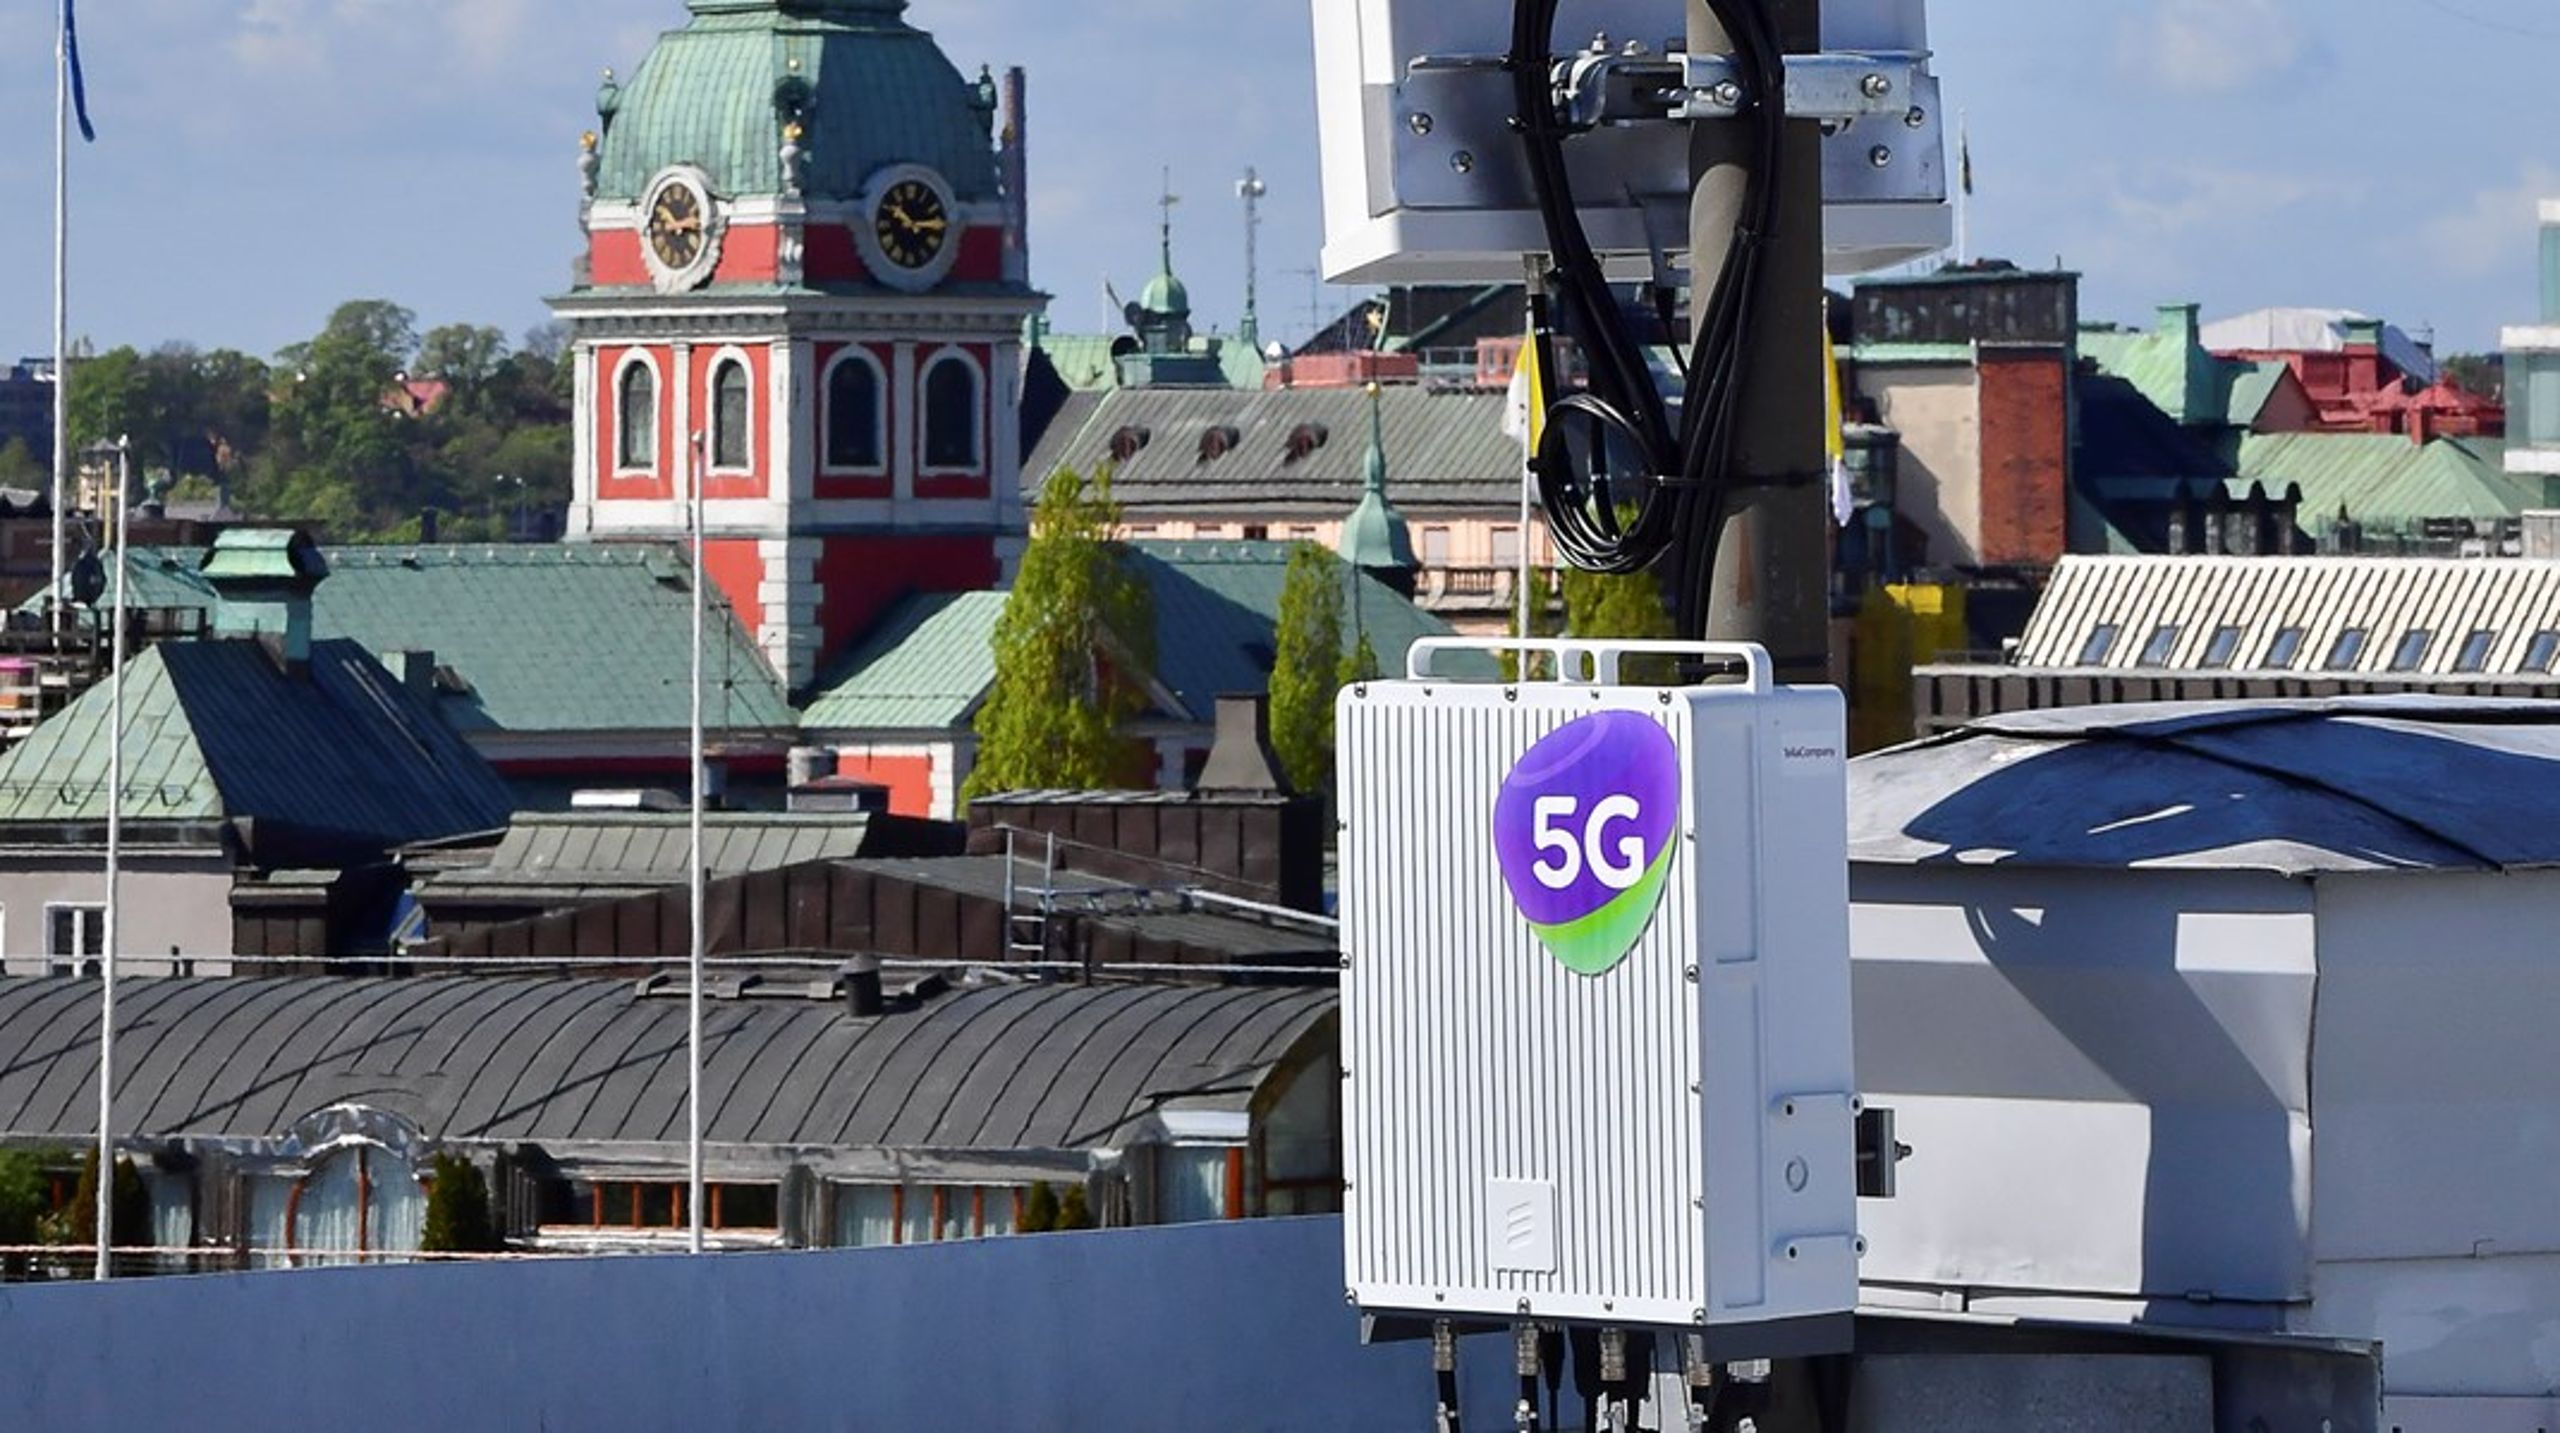 Sverige har halkat efter i 5G-utbyggnad, skriver debattören.